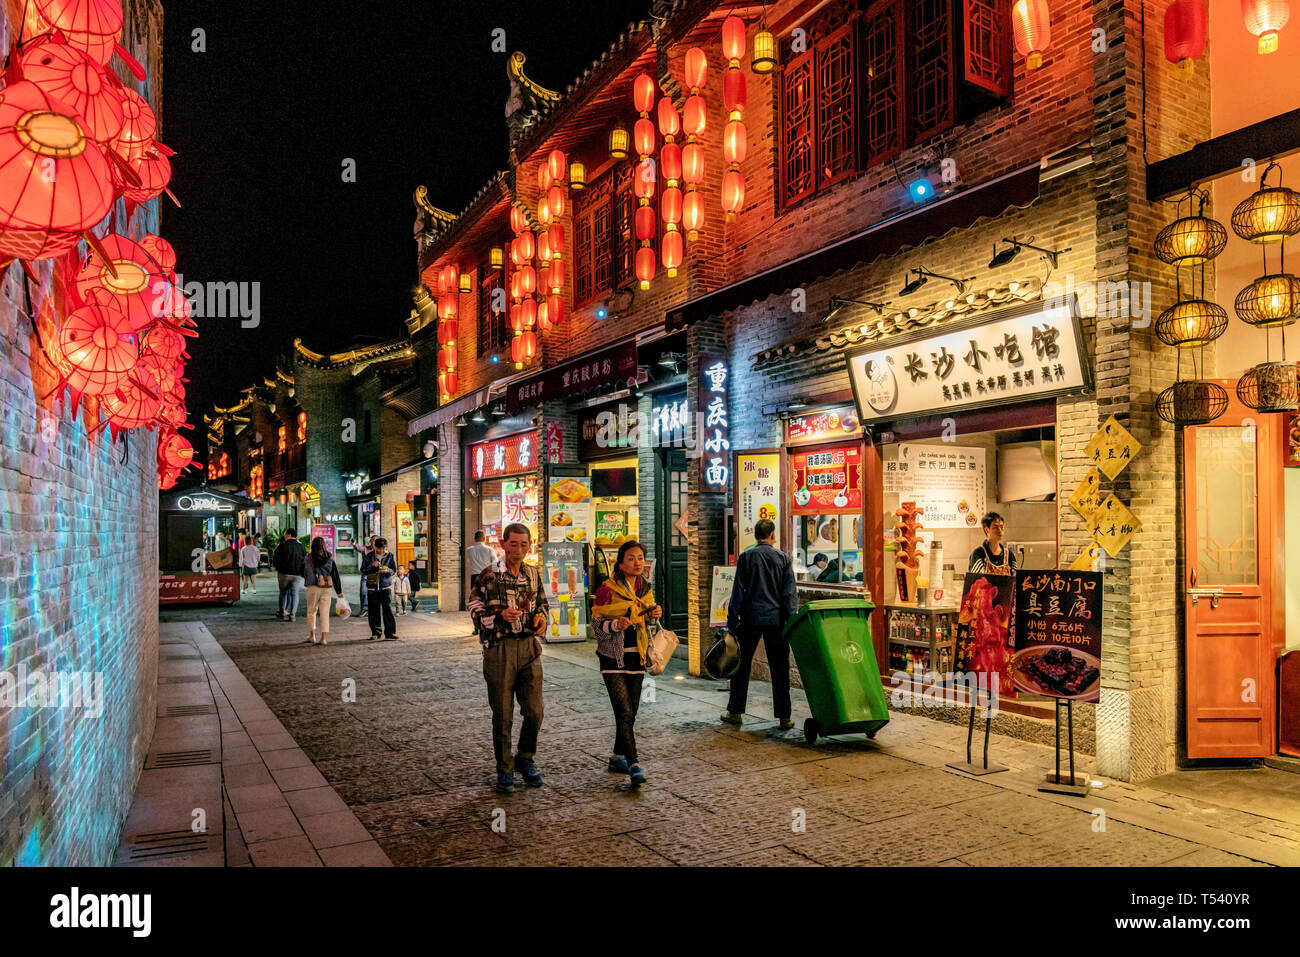 GUILIN, CHINA - November 01: Dies ist eine Einkaufsstraße mit traditionellen chinesischen Gebäuden nahe der Fußgängerzone Zhengyang Stret am November 01, 2018 in Guil Stockfoto